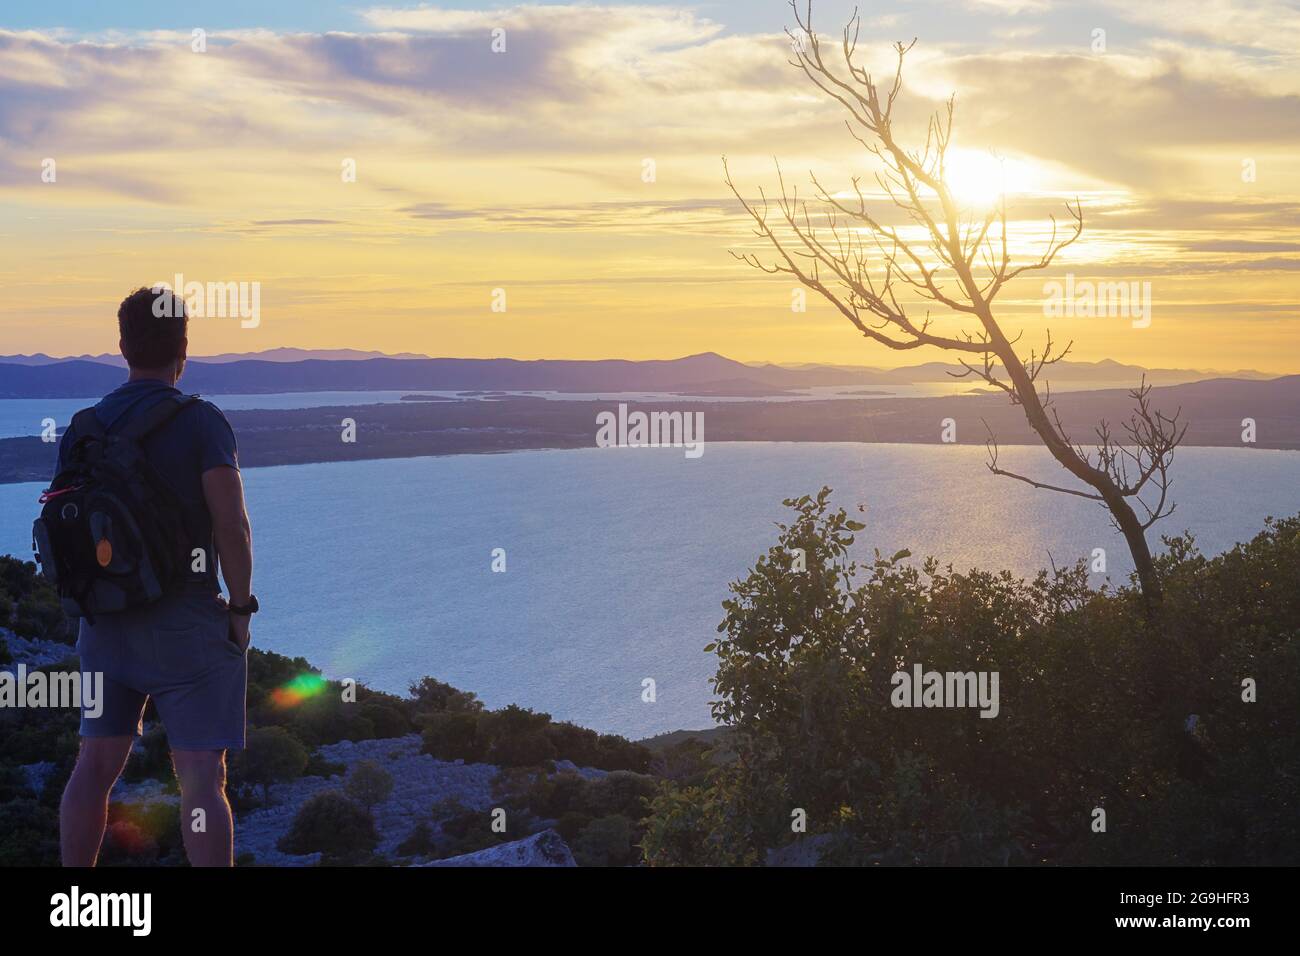 Männlicher Wanderer auf dem Hügel, der einen wunderschönen Sonnenuntergang über der Adria beobachtet. Konzepte für Wandern, Leistung, Erwartung, Optimismus und Selbstreflexion. Stockfoto